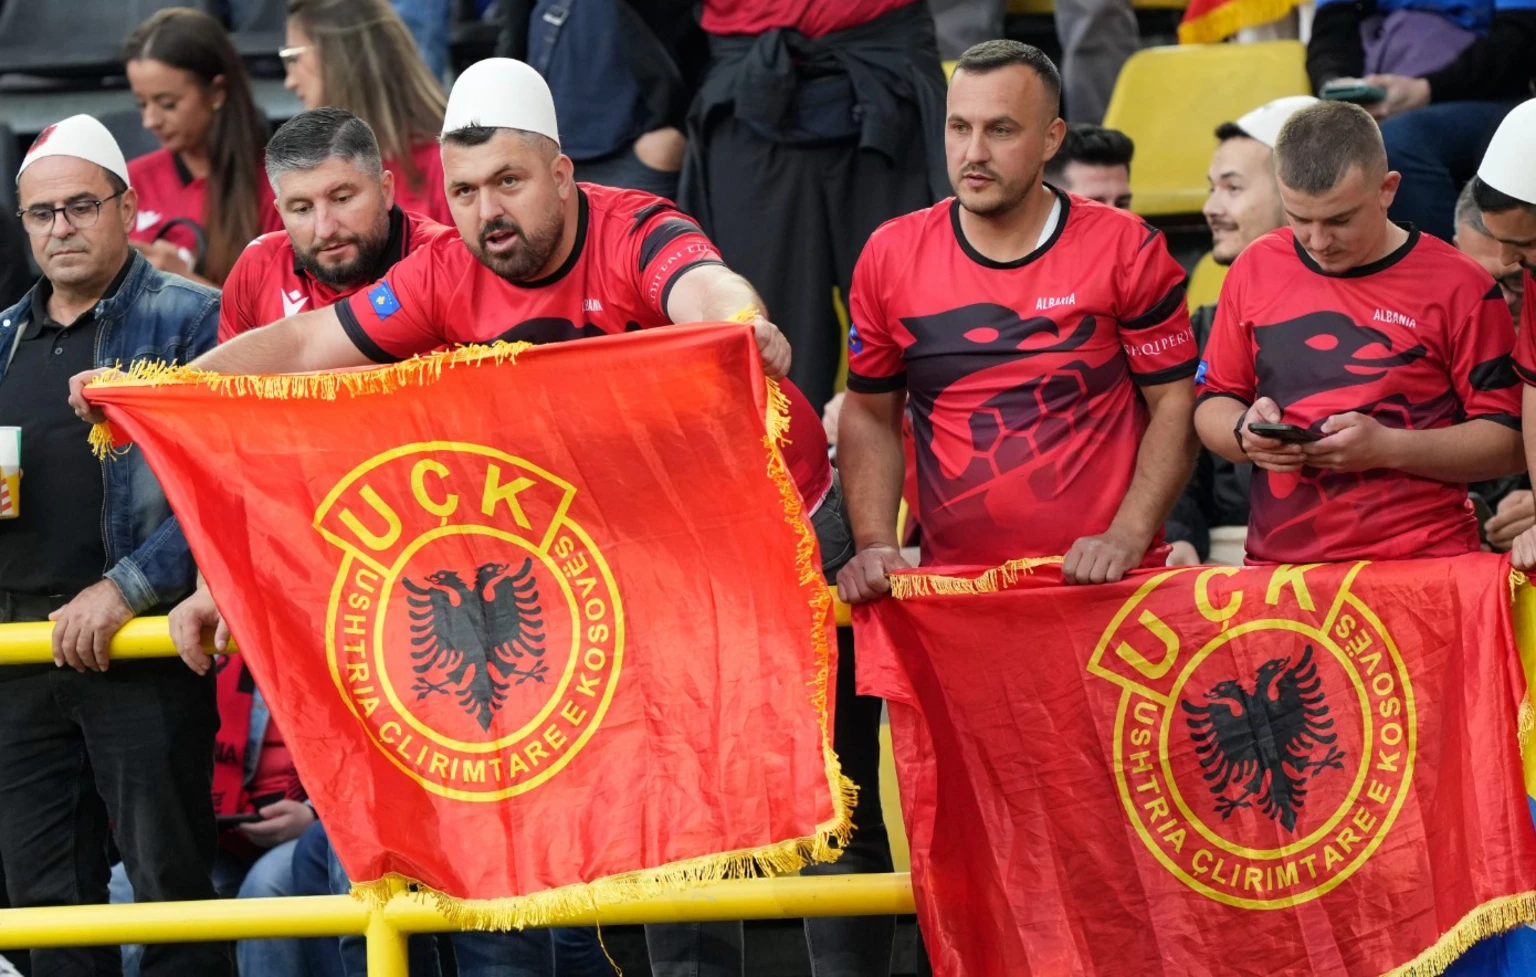 Πρόκληση στο Euro! Αλβανοί ανήρτησαν πανό με χάρτη που δείχνουν ελληνικά εδάφη σαν αλβανικά και σημαίες του UCK – Ξεκινά έρευνα η UEFA